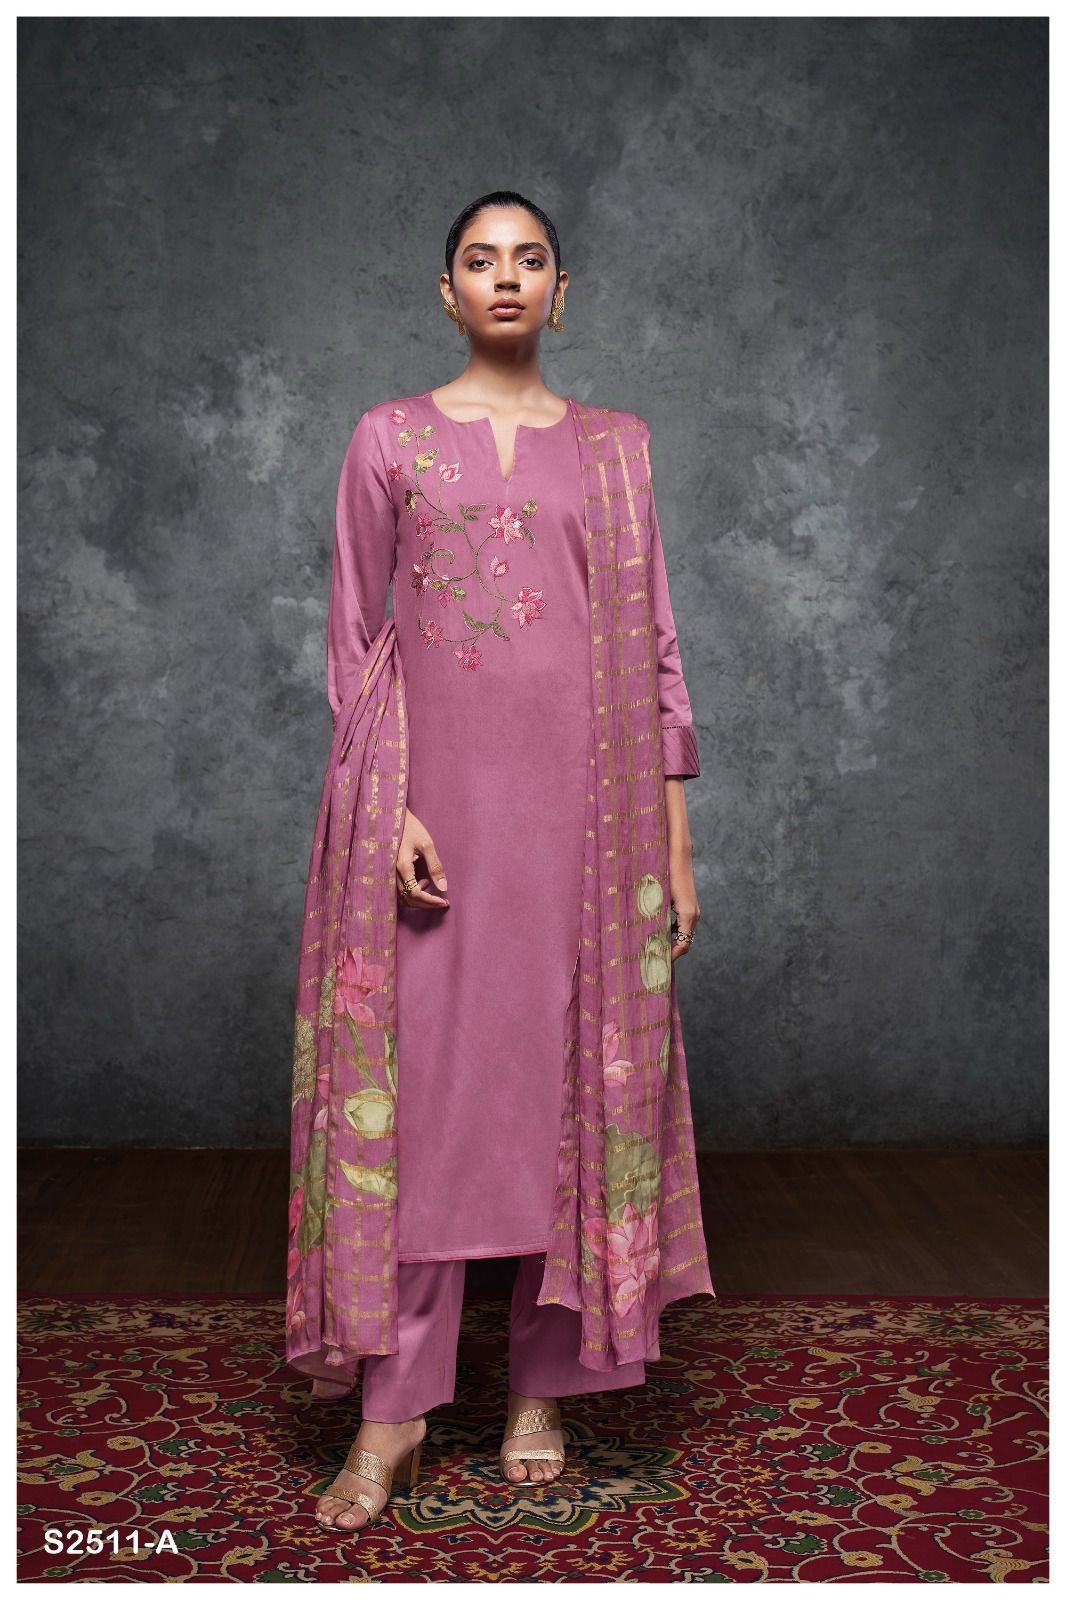 Eira 2511 Ganga Cotton Silk Plazzo Style Suits